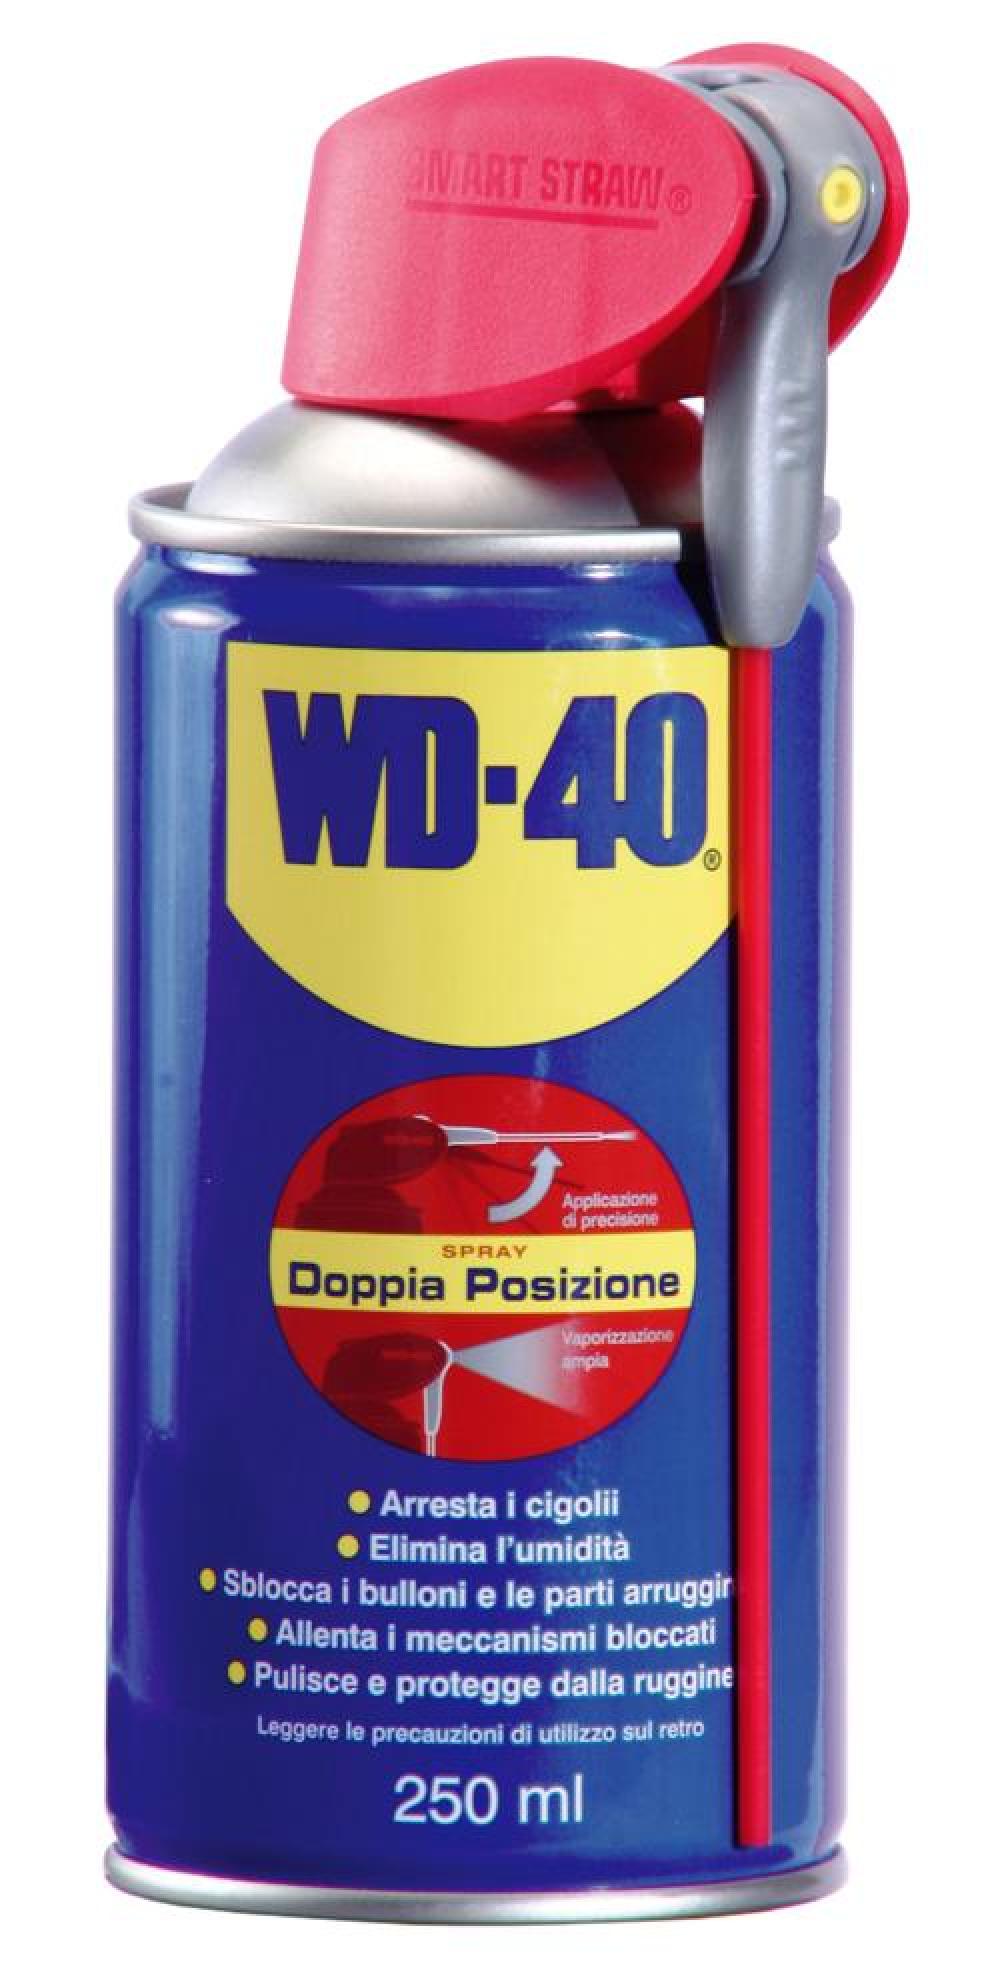 wd40, lubrificante, - Vela e Motore